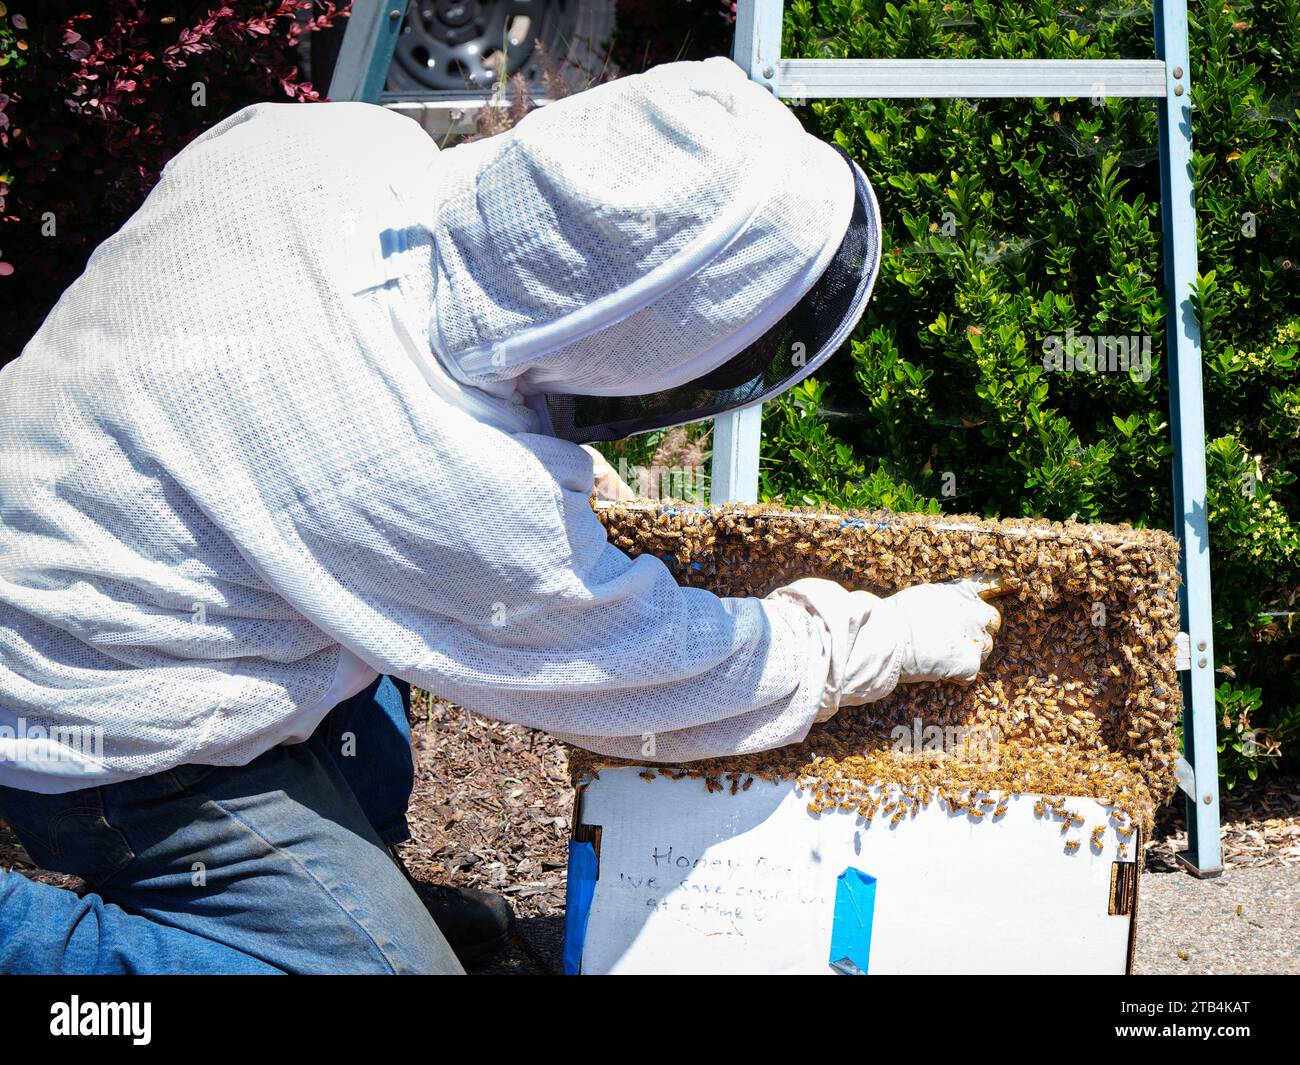 Un apicultor apunta a un enjambre de abejas que acaba de rescatar. Cerrará la caja por la noche para llevarla de vuelta a su apiario y añadir las abejas a una colmena. Foto de stock